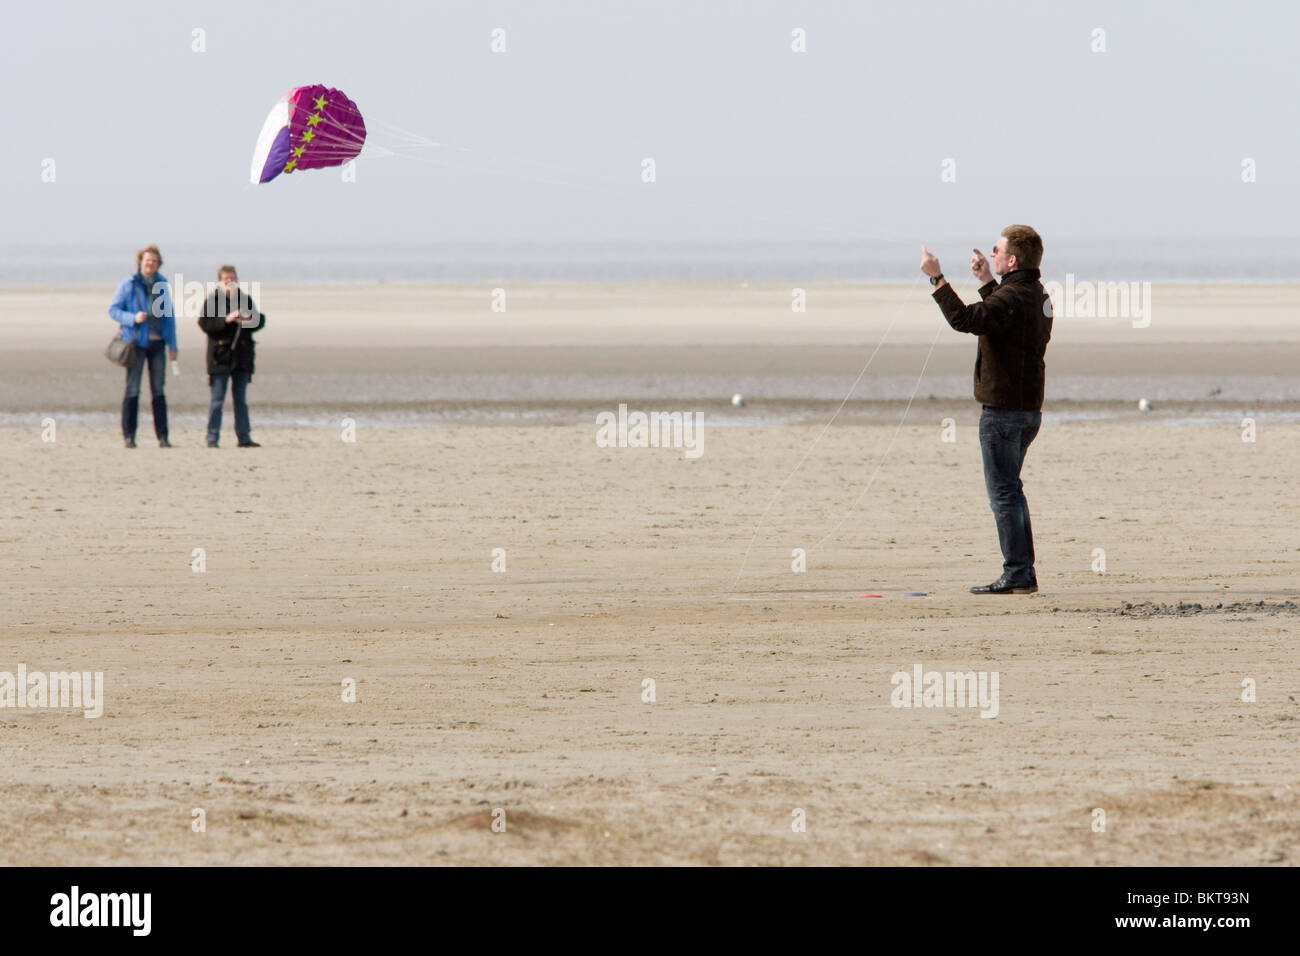 Kite on the beach Stock Photo